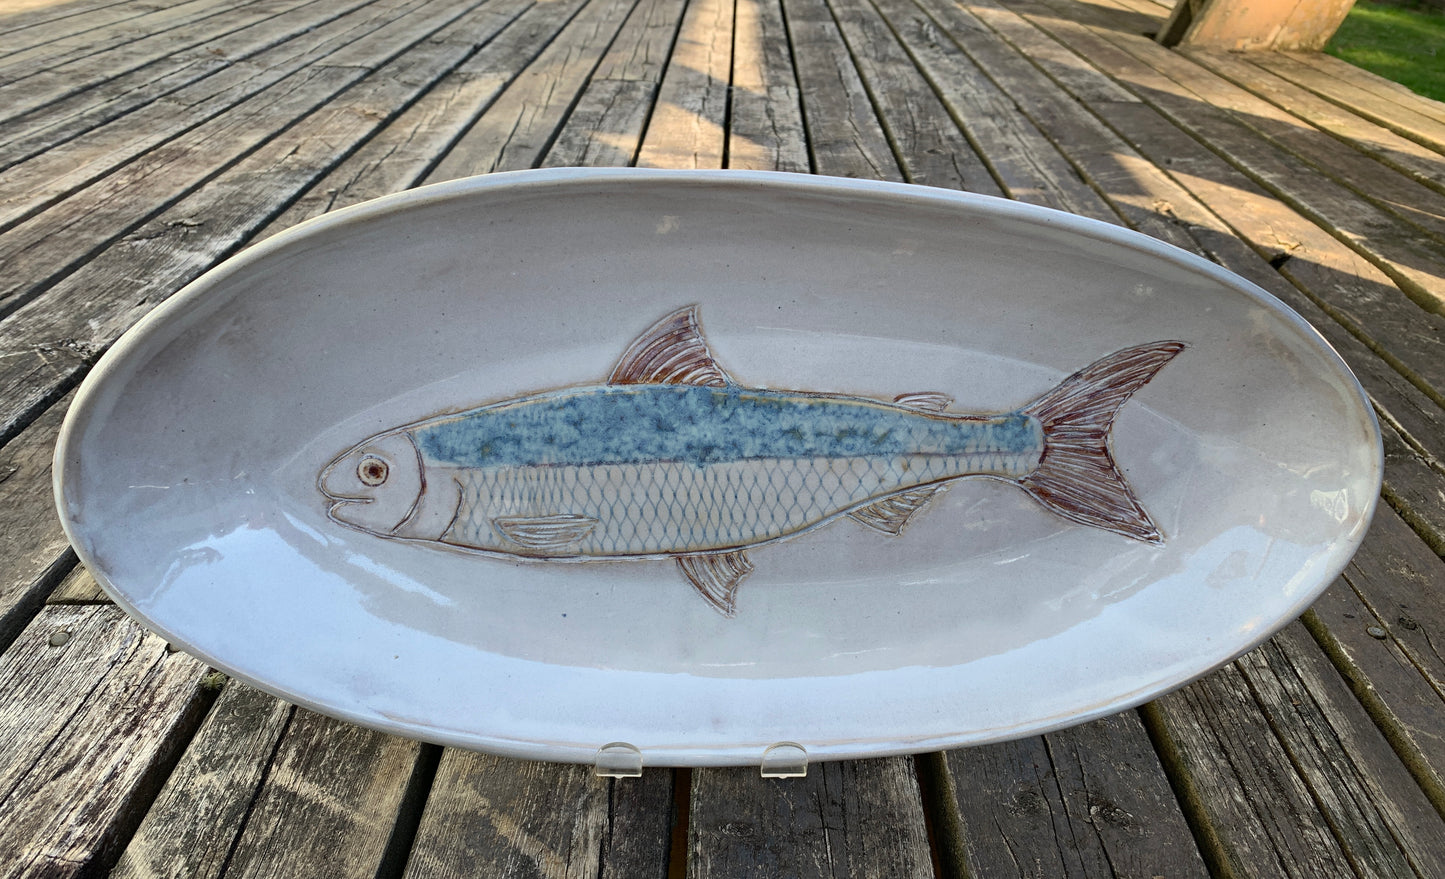 Oval Platter - Atlantic Whitefish